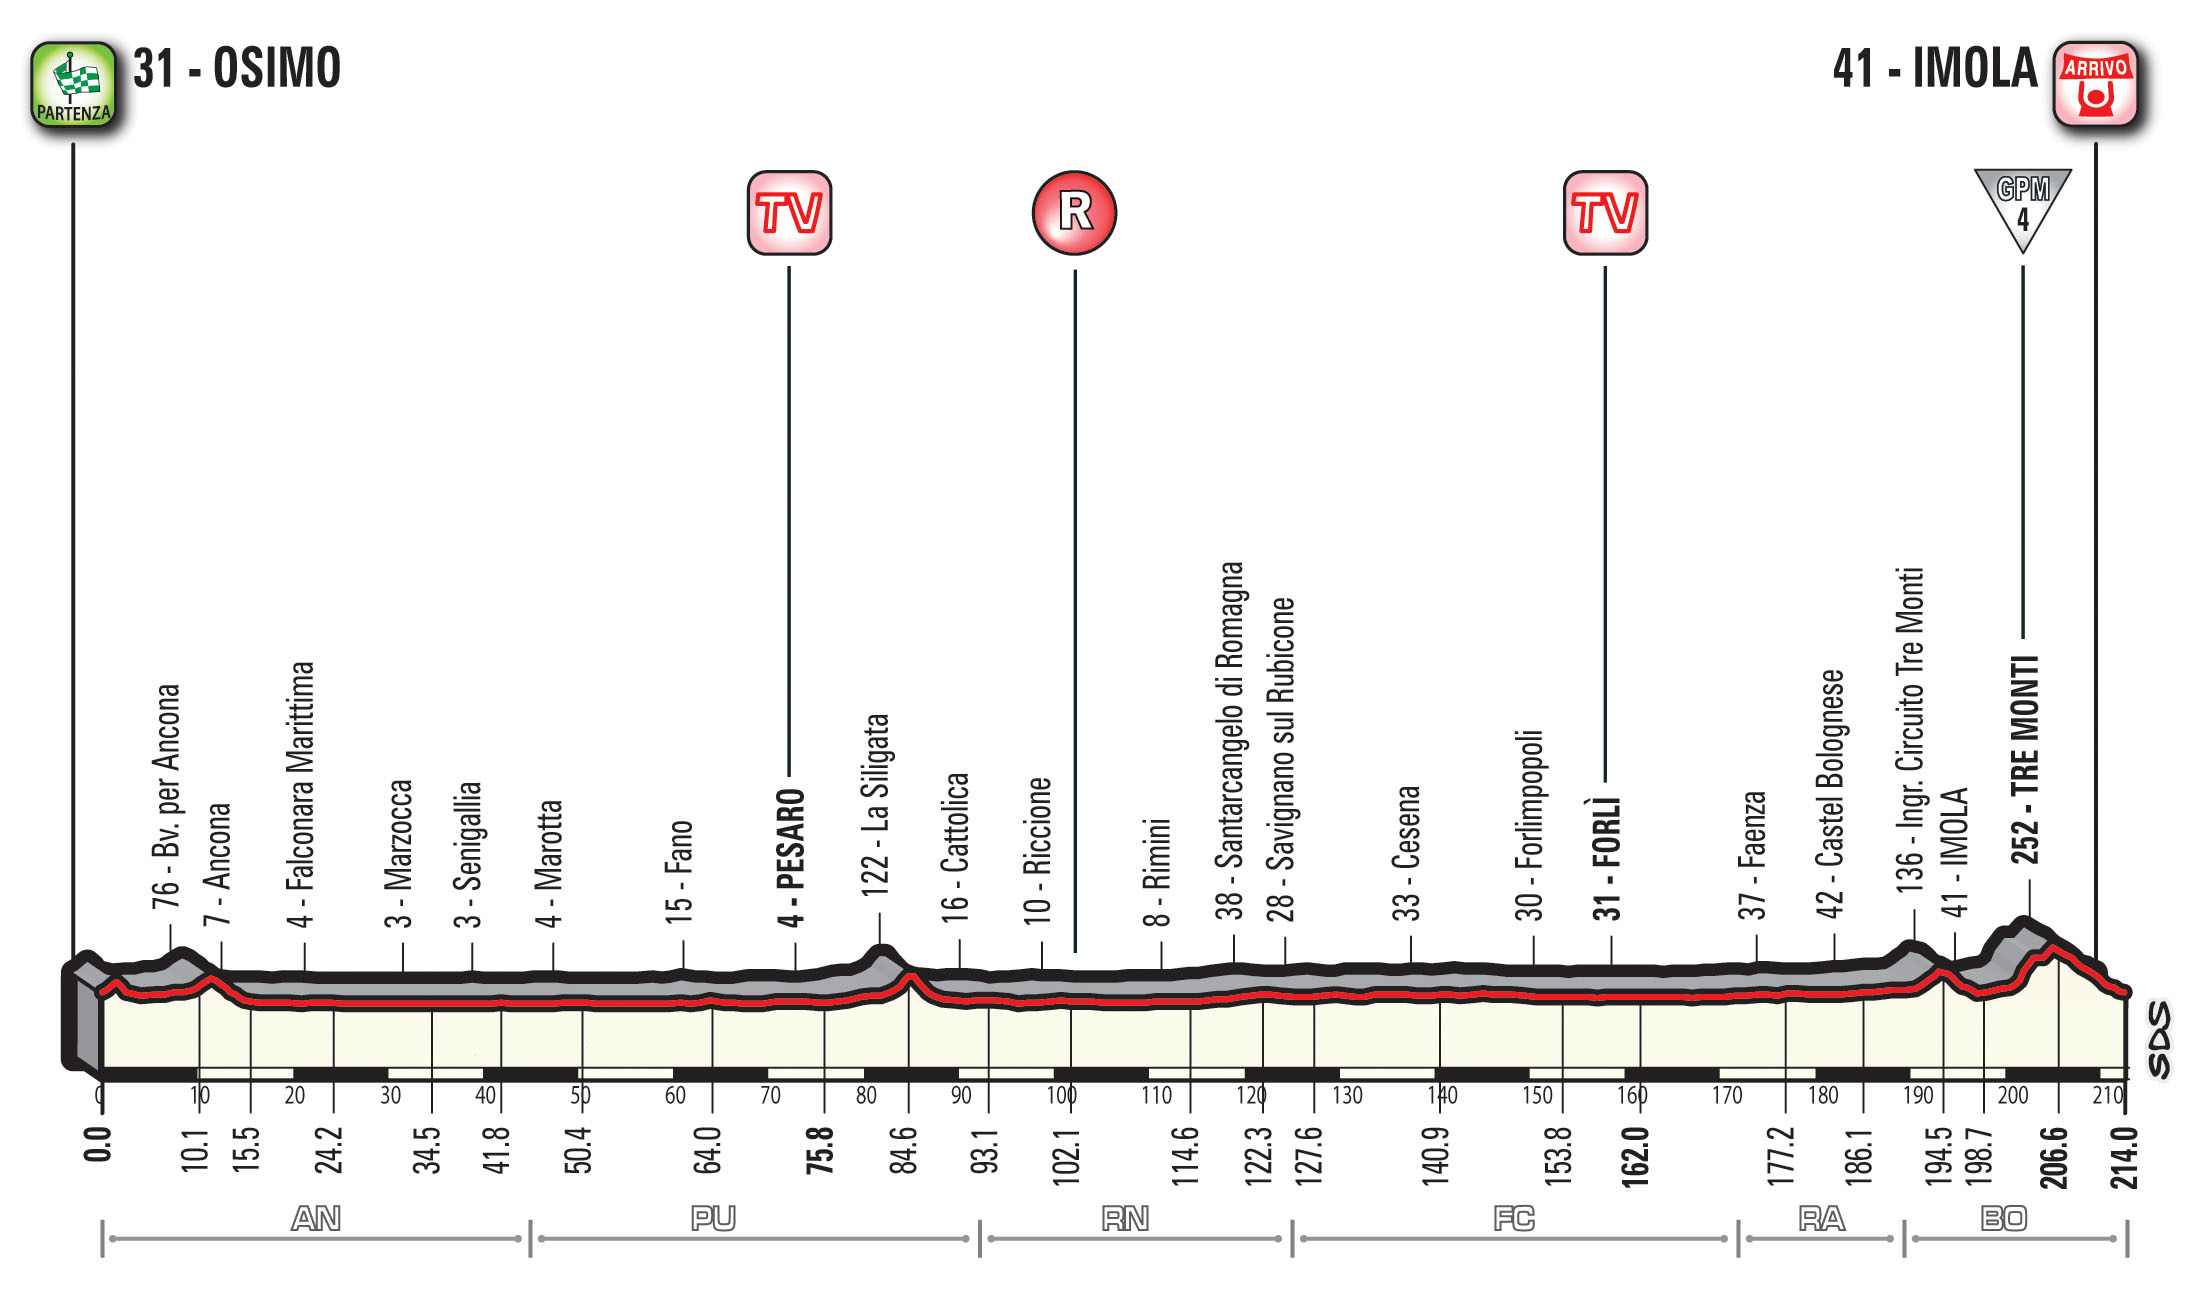 profil 12. etapu Giro d'Italia 2018